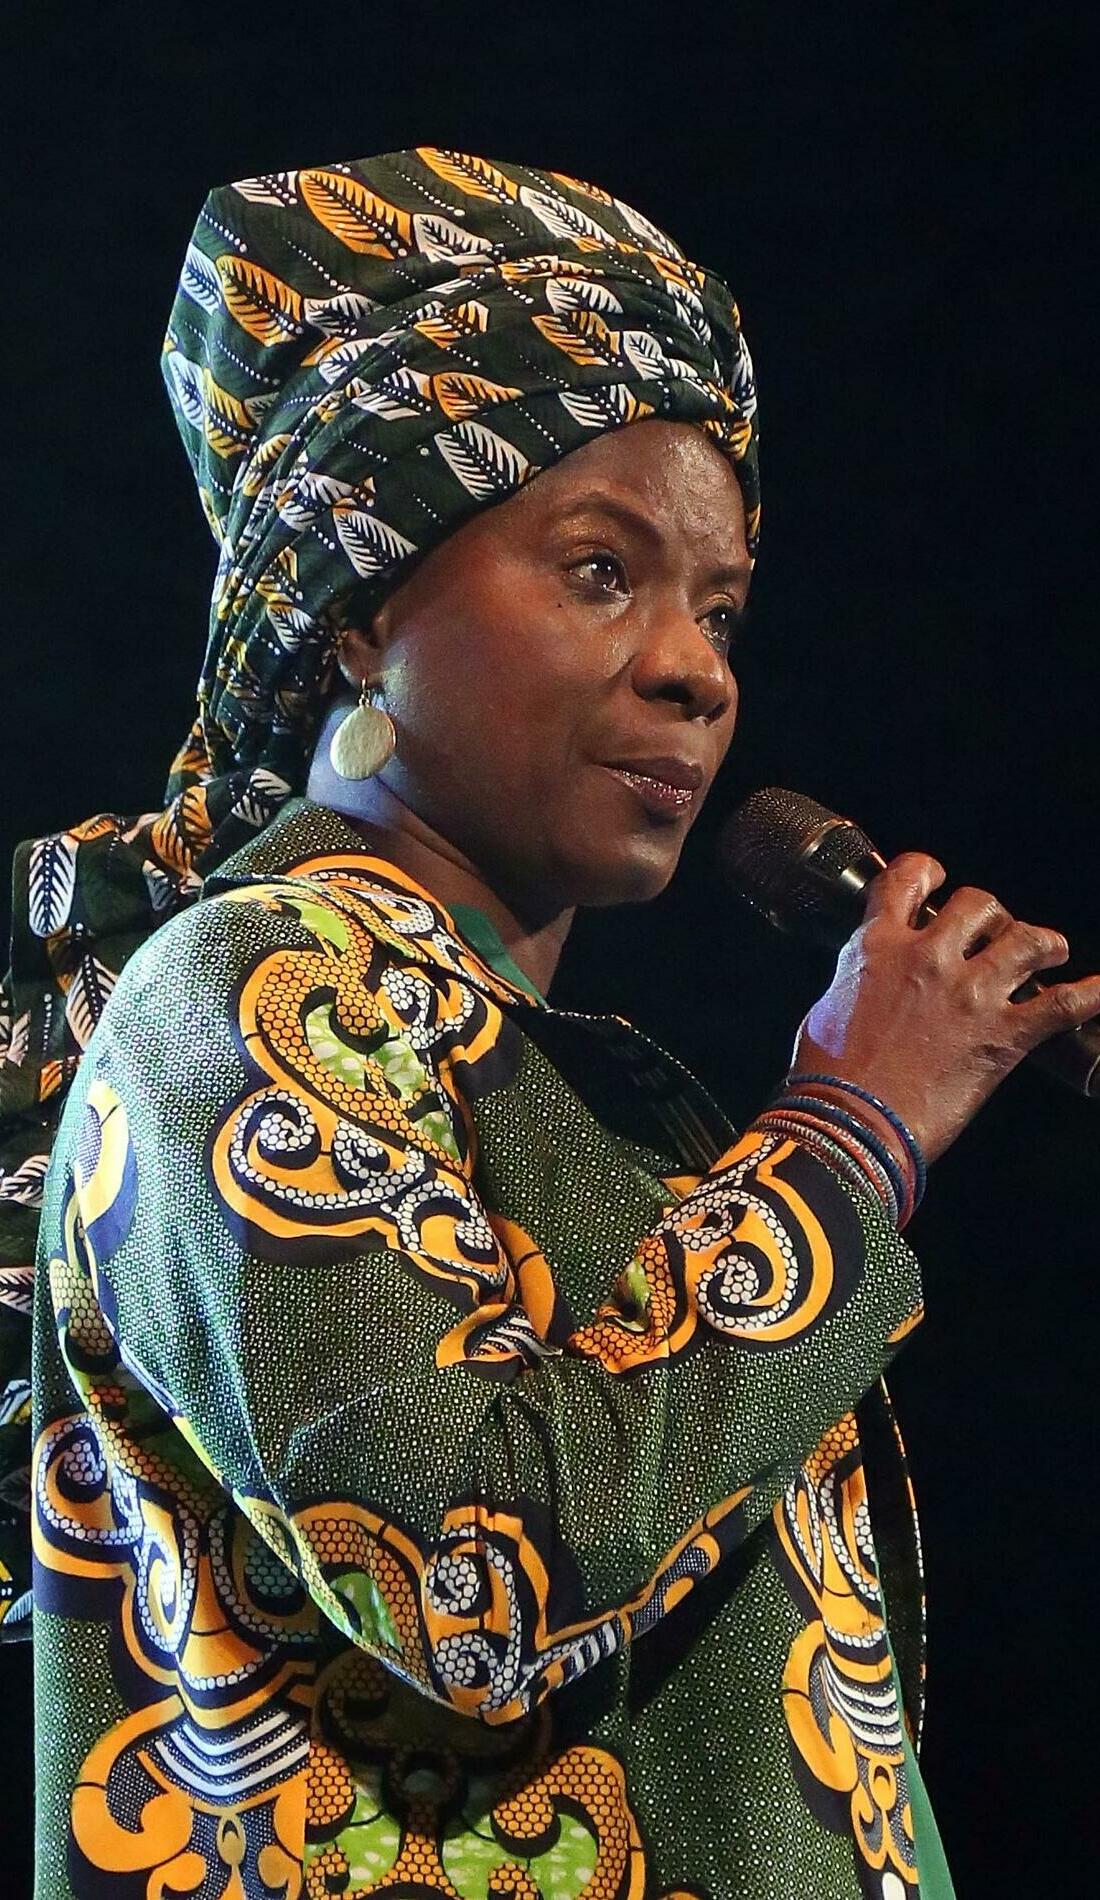 A Angelique Kidjo live event